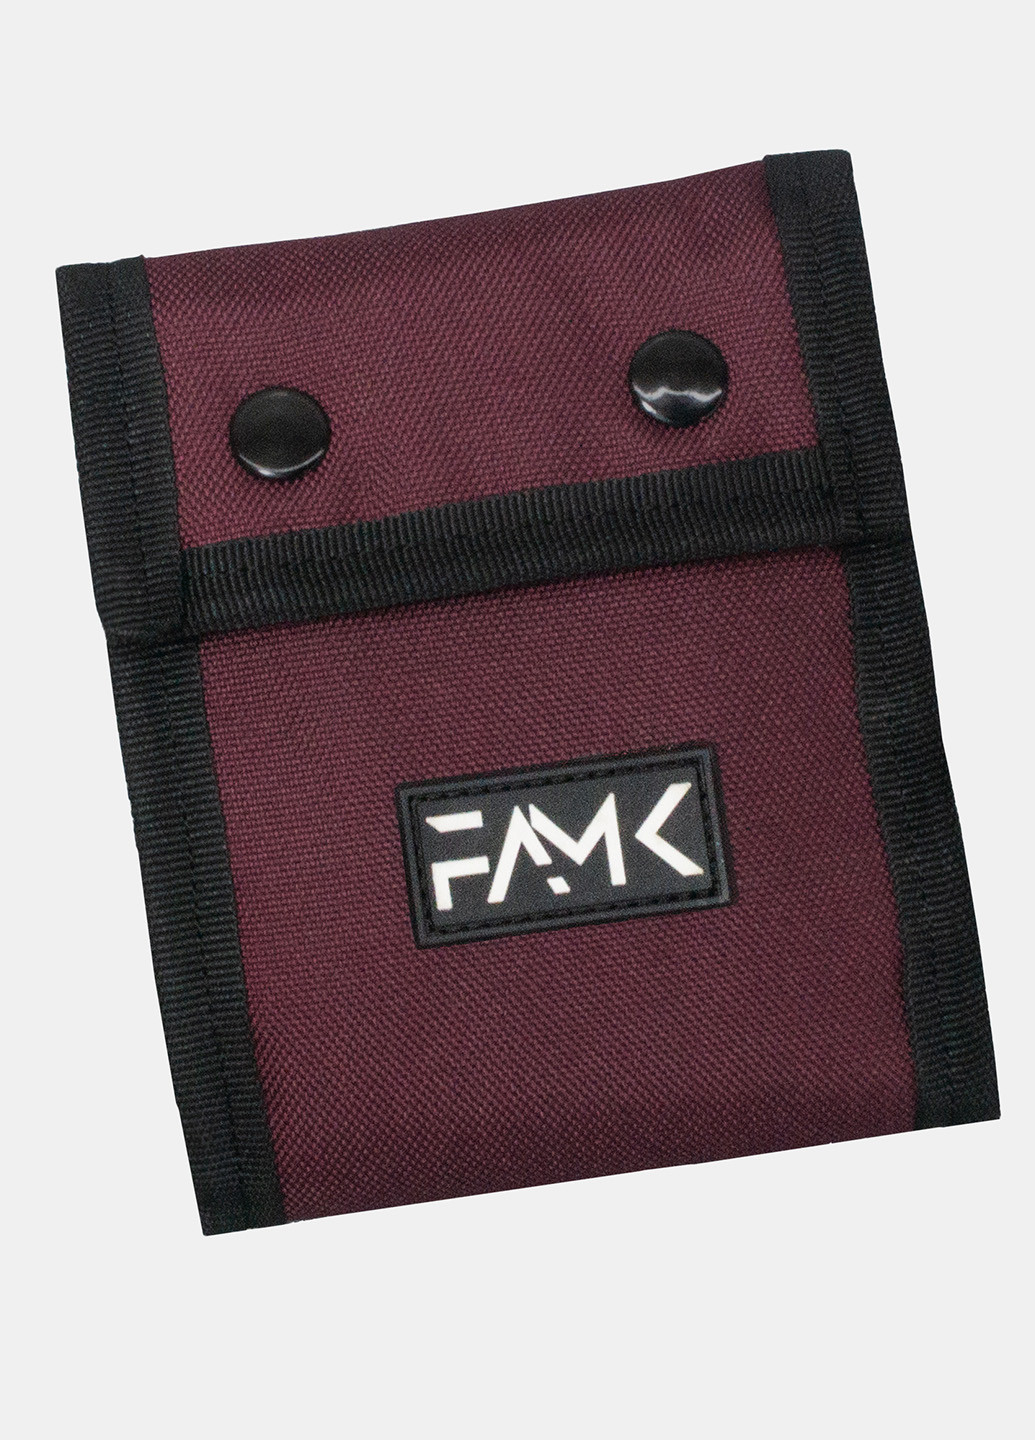 Гаманець на кнопках Tri-fold бордовий Famk (254661181)